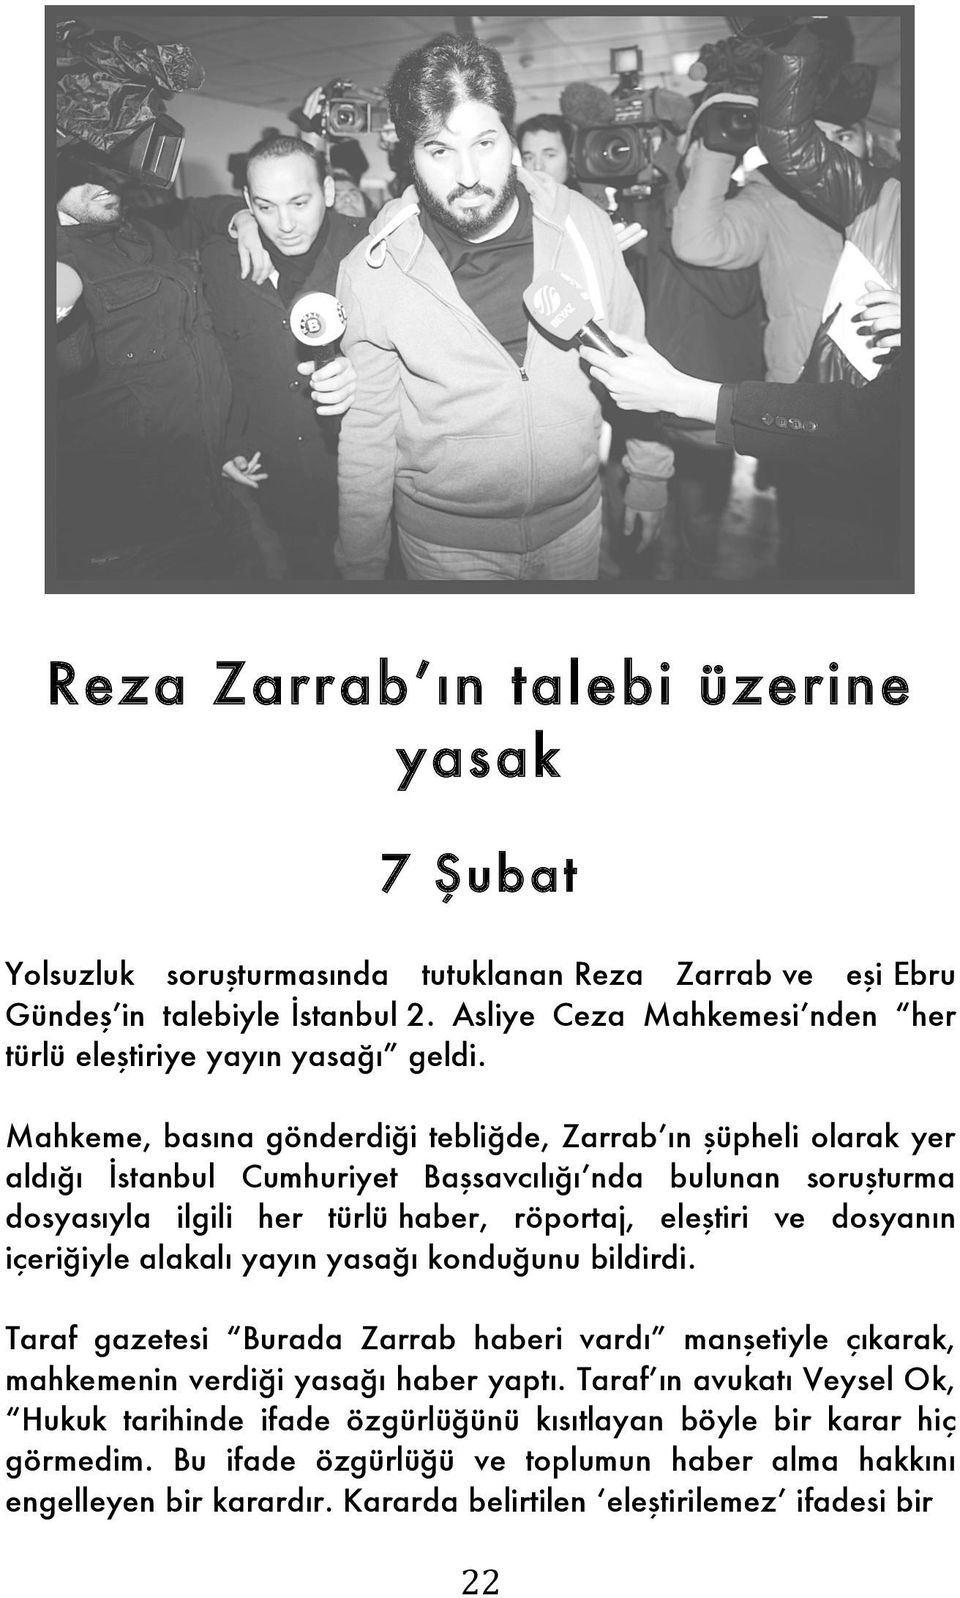 Mahkeme, basına gönderdiği tebliğde, Zarrab ın şüpheli olarak yer aldığı İstanbul Cumhuriyet Başsavcılığı nda bulunan soruşturma dosyasıyla ilgili her türlü haber, röportaj, eleştiri ve dosyanın